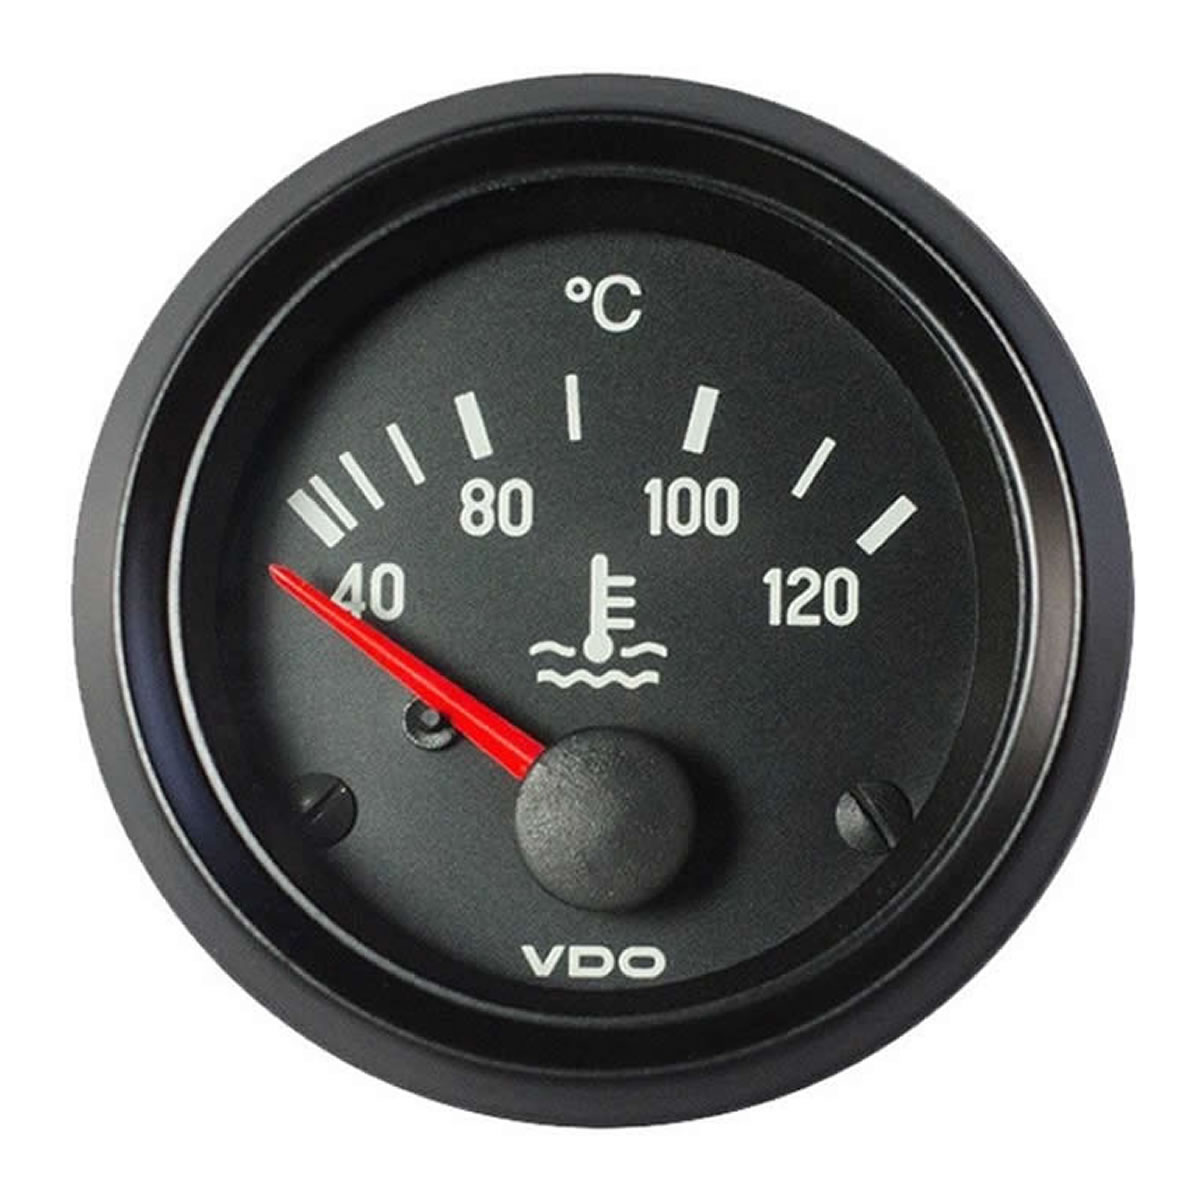 VDO Coolant temperature 120C Gauge